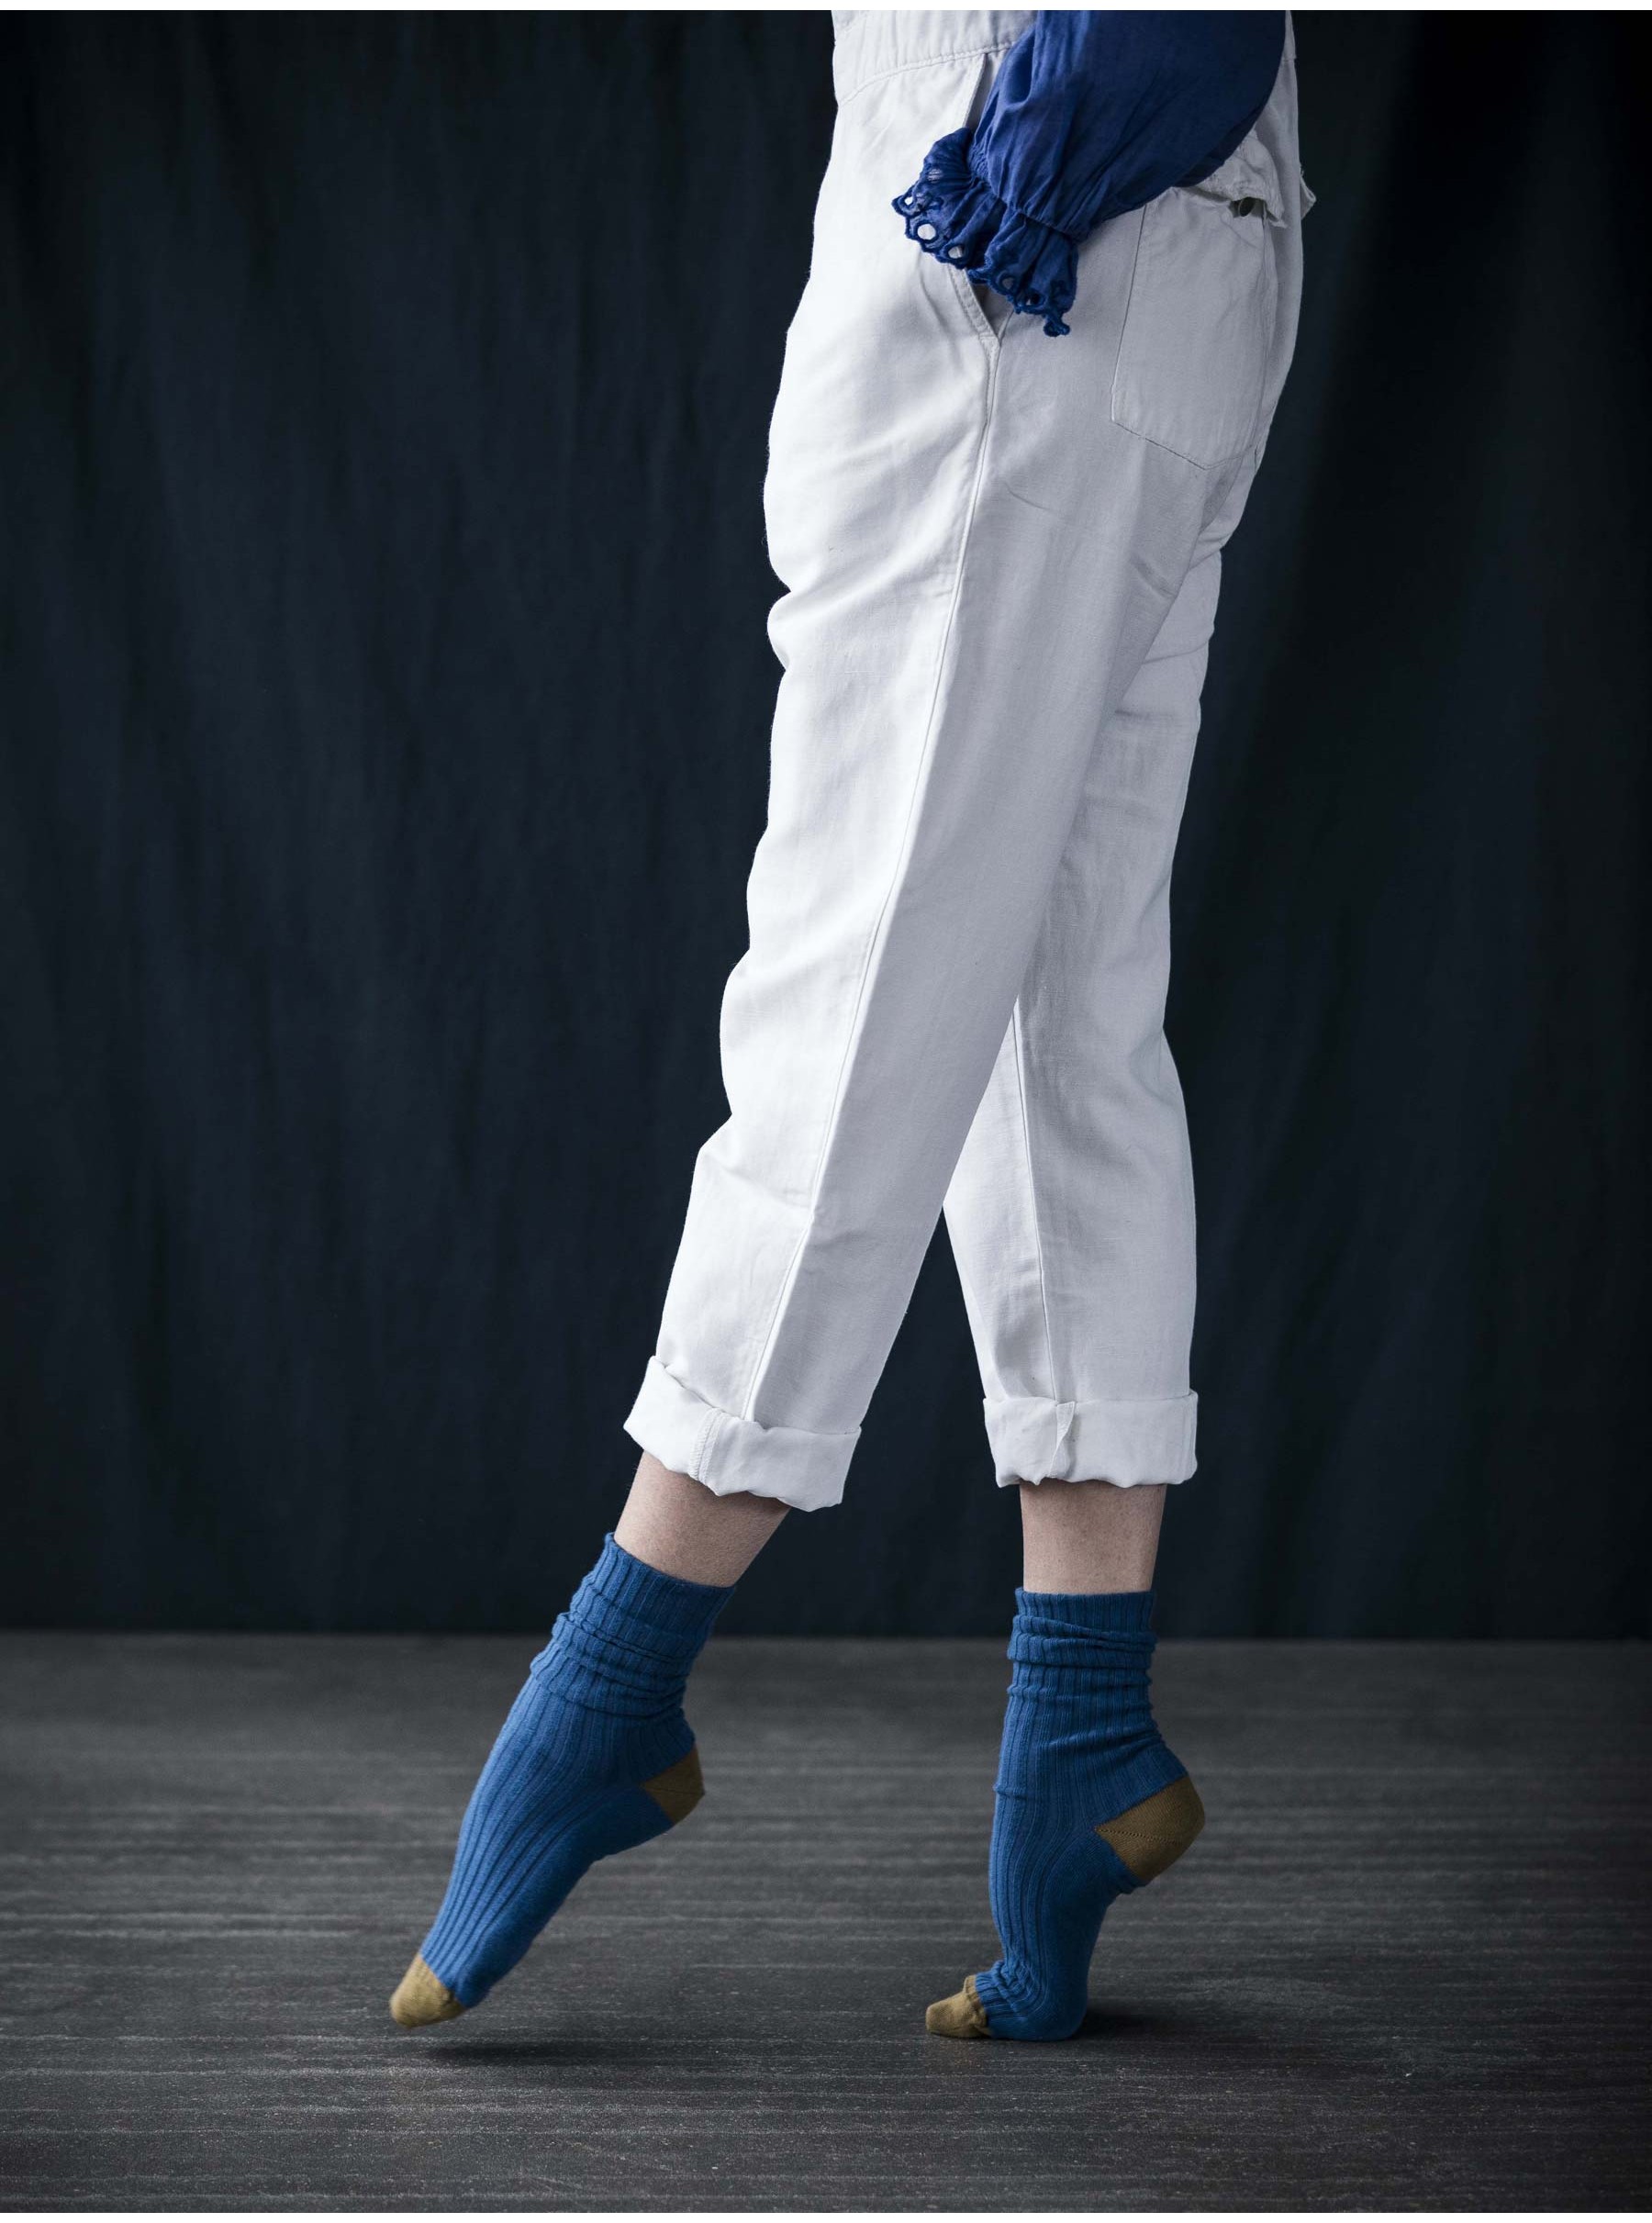 Socks cotton blue bicolour